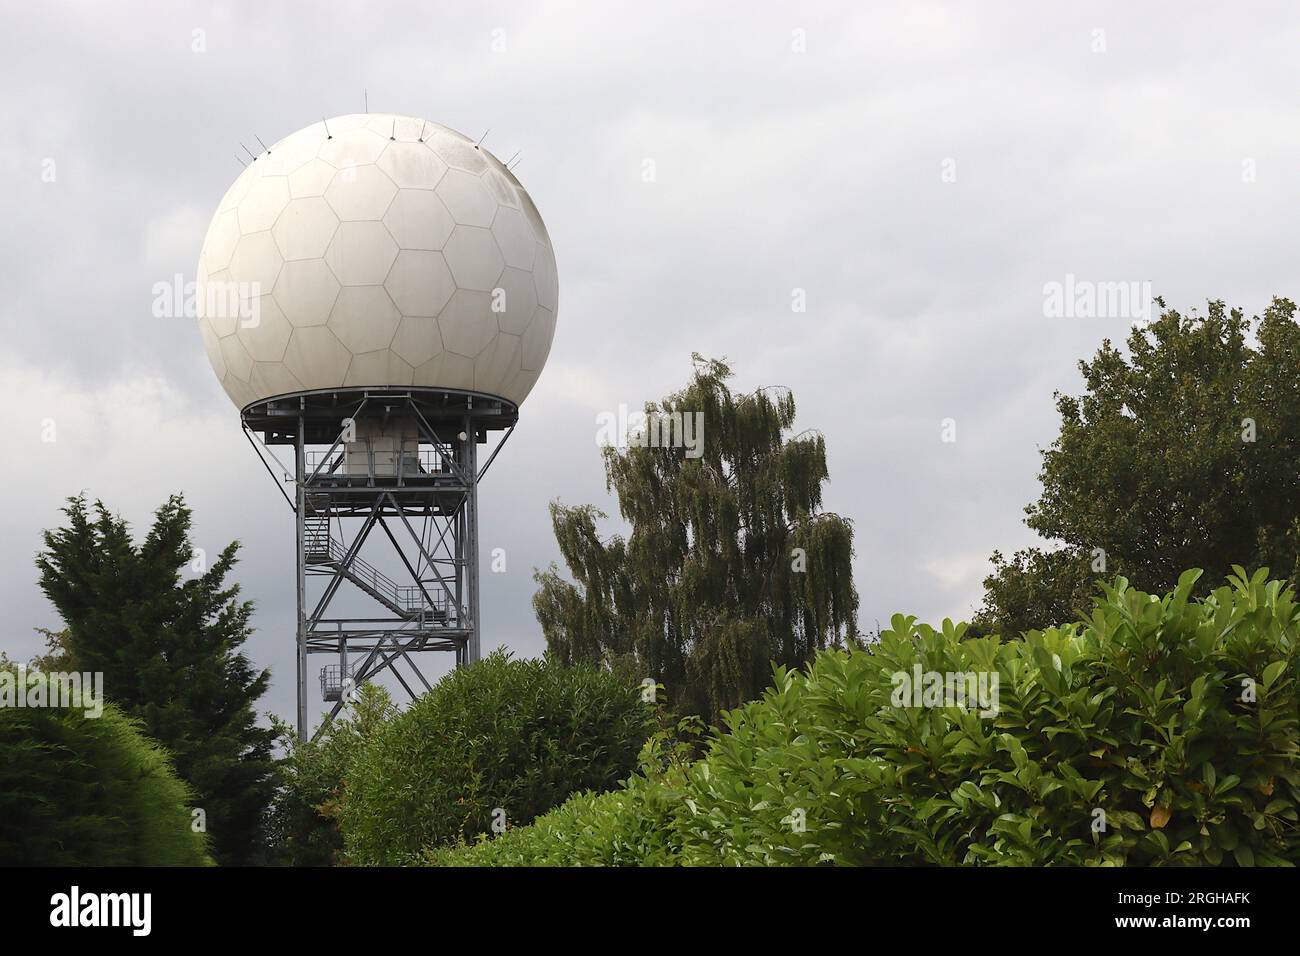 NATS - National Air Traffic Service Radar Dome in Bovingdon, Hertfordshire. Die wetterfeste Kuppel schützt die Antenne und Radaranlage im Inneren. Stockfoto